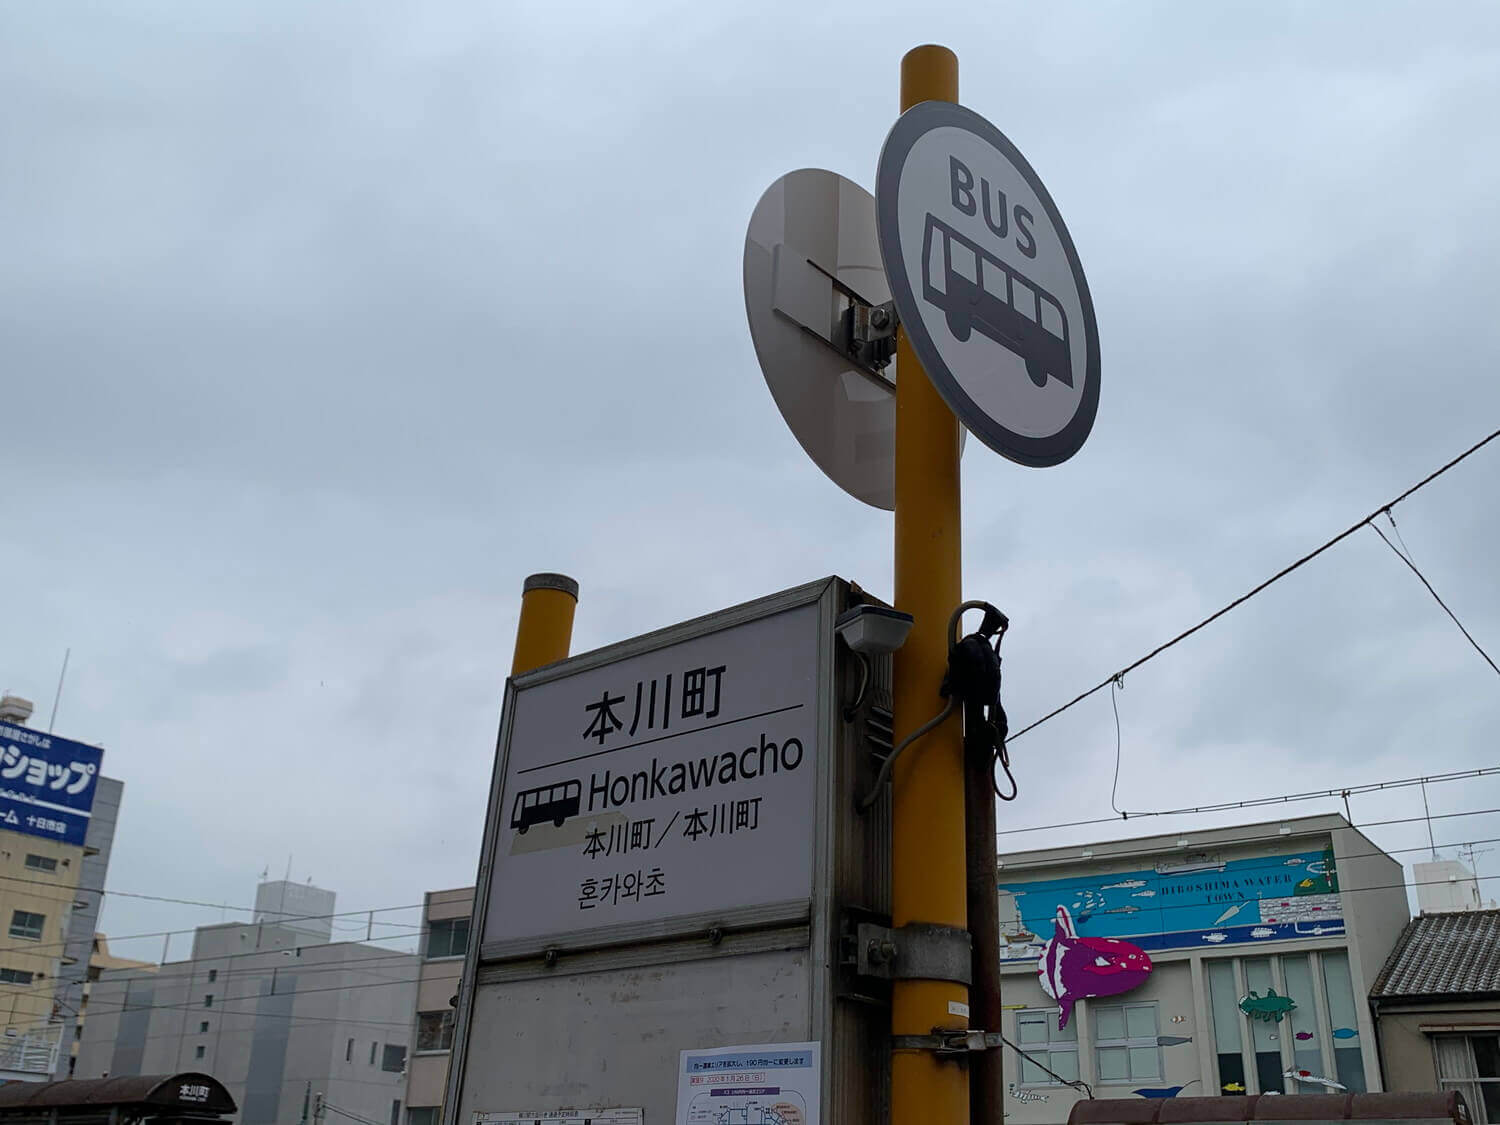 バス停本川町の看板